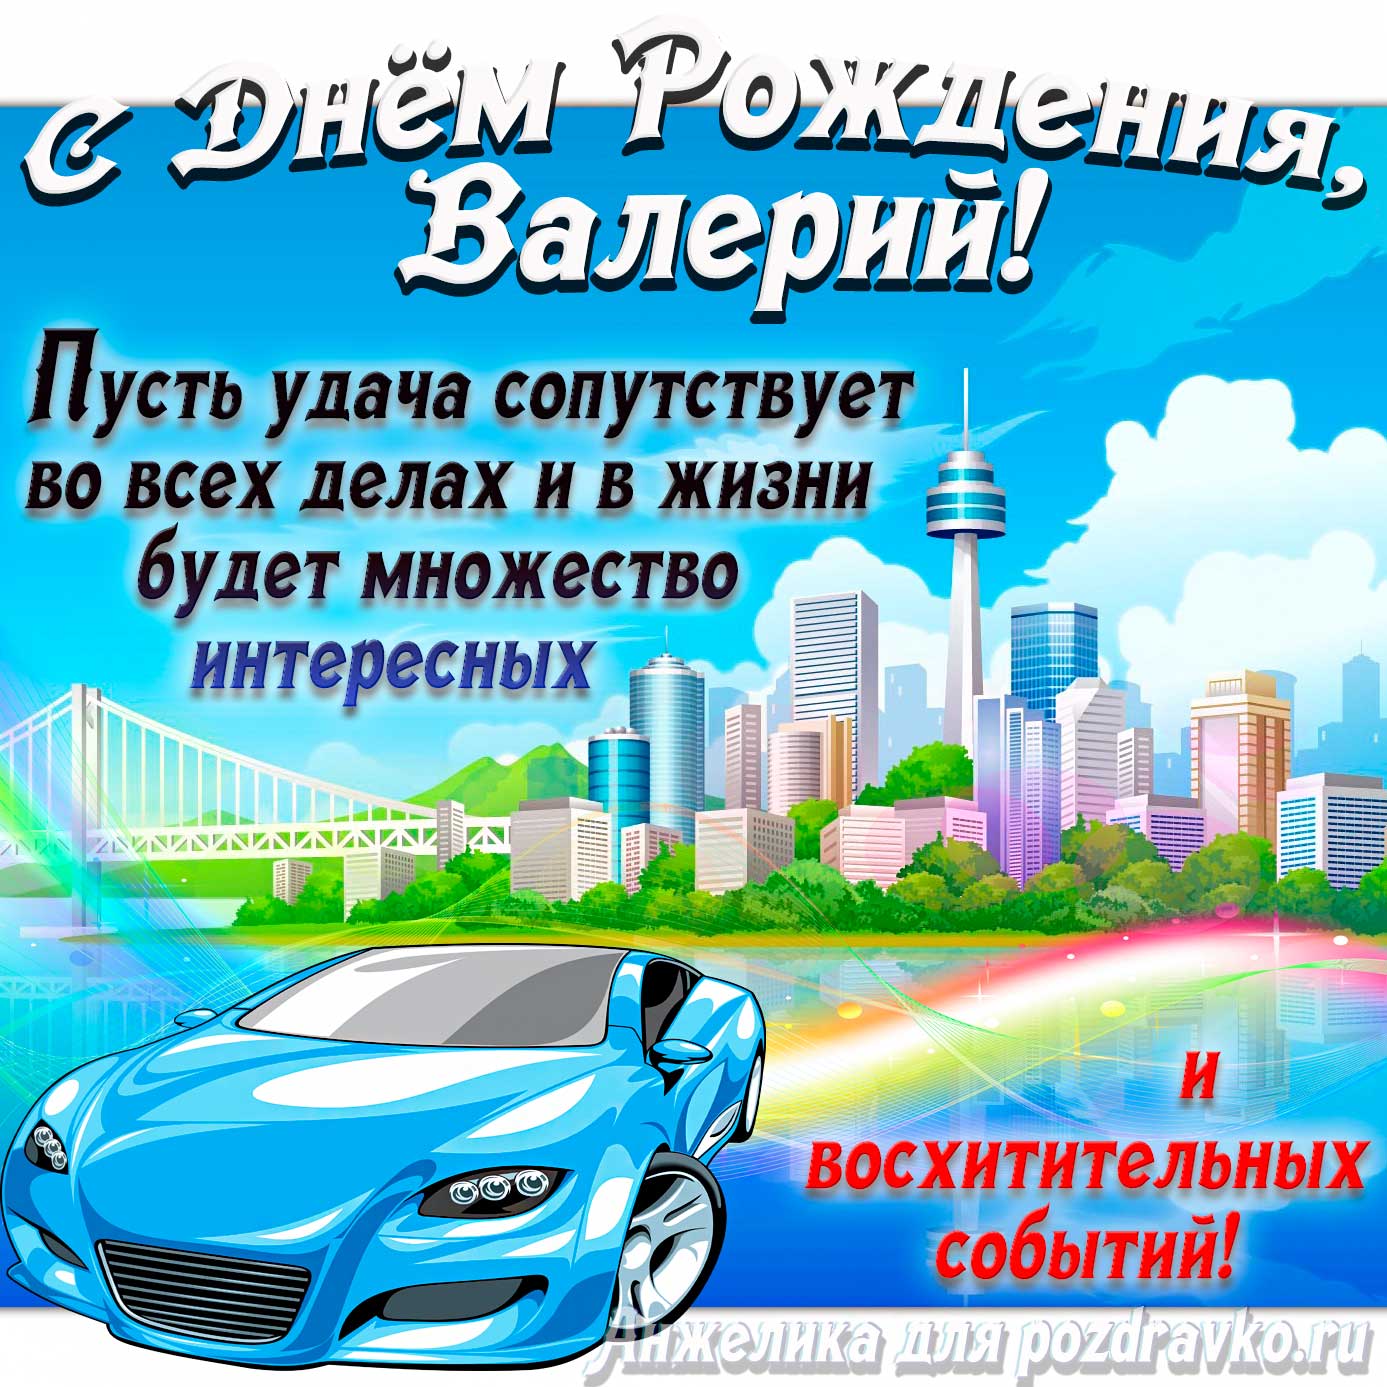 Открытка - с Днём Рождения Валерий с голубой машиной и пожеланием. Скачать бесплатно или отправить картинку.